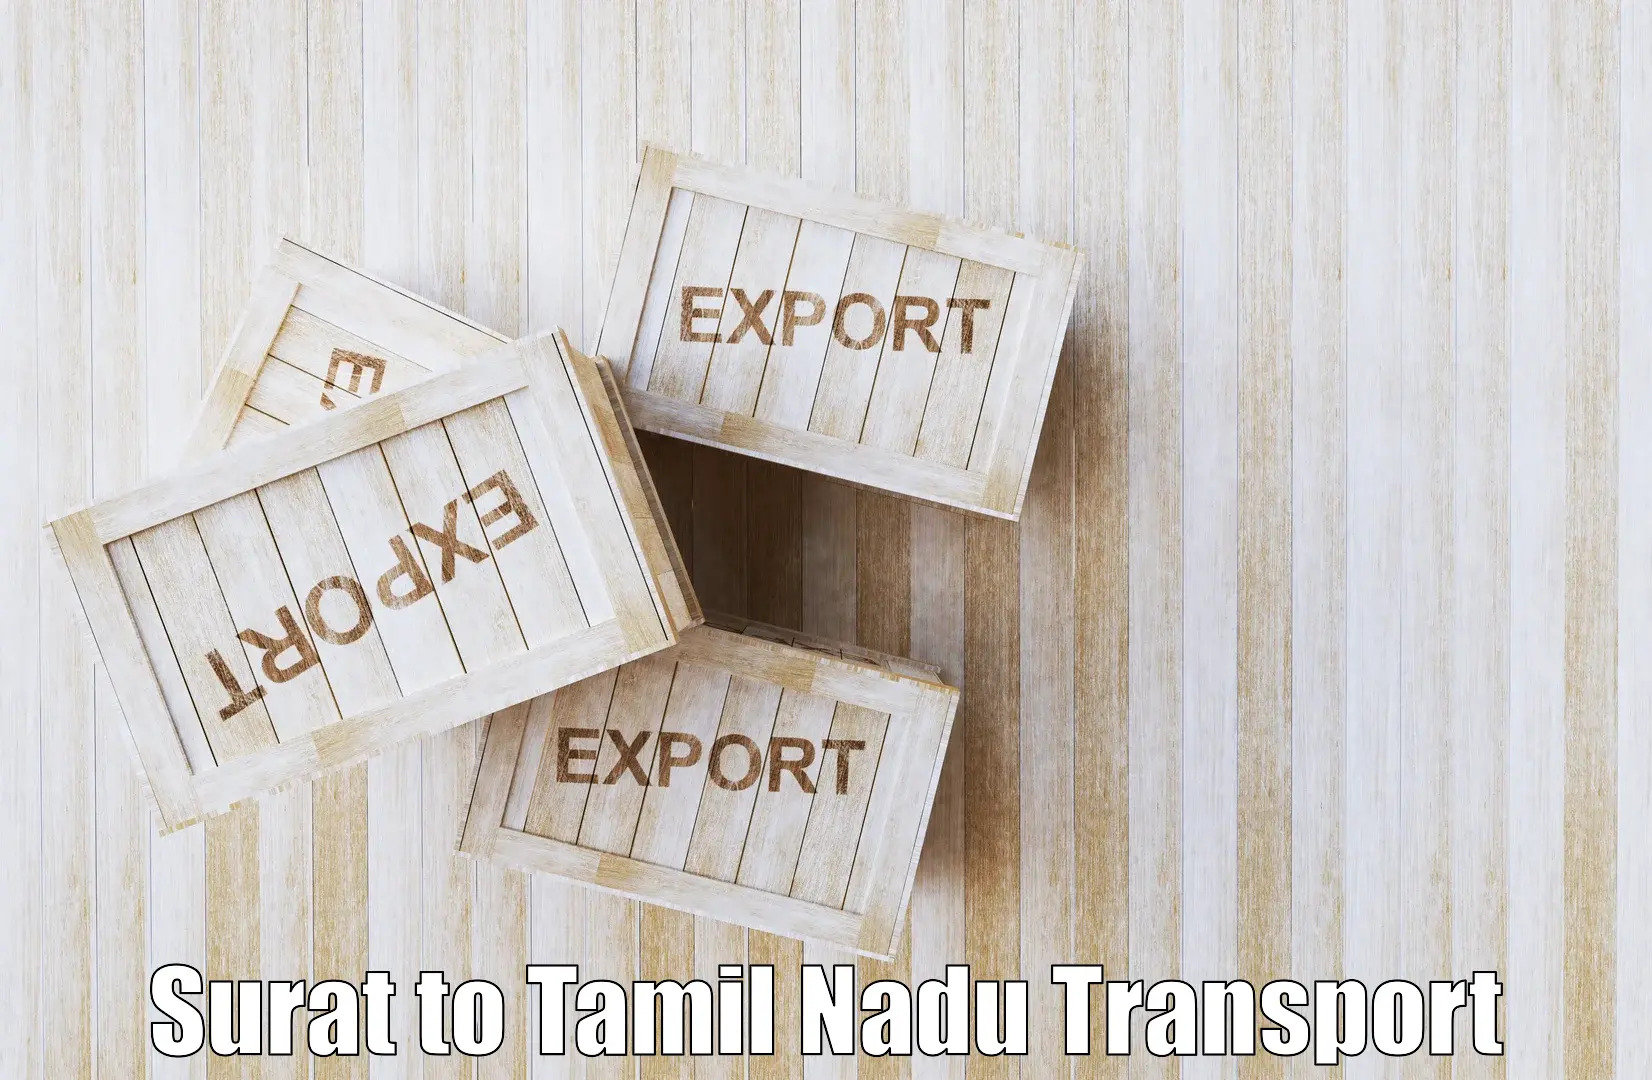 Cargo train transport services Surat to Orathanadu